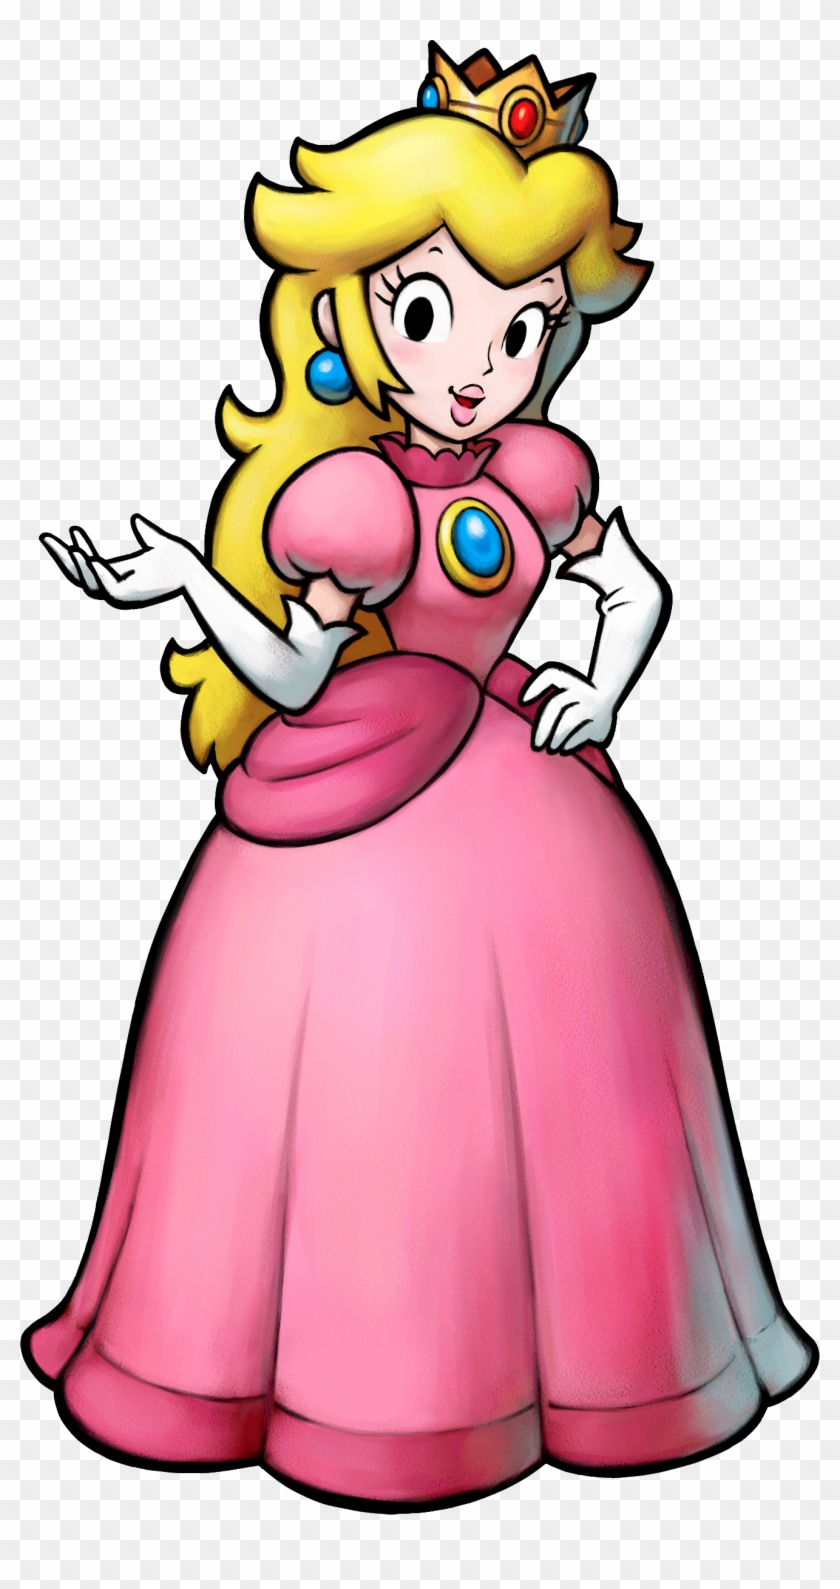 Mario Princess Peach - Princess Peach Mario And Luigi Partners In Time #224641